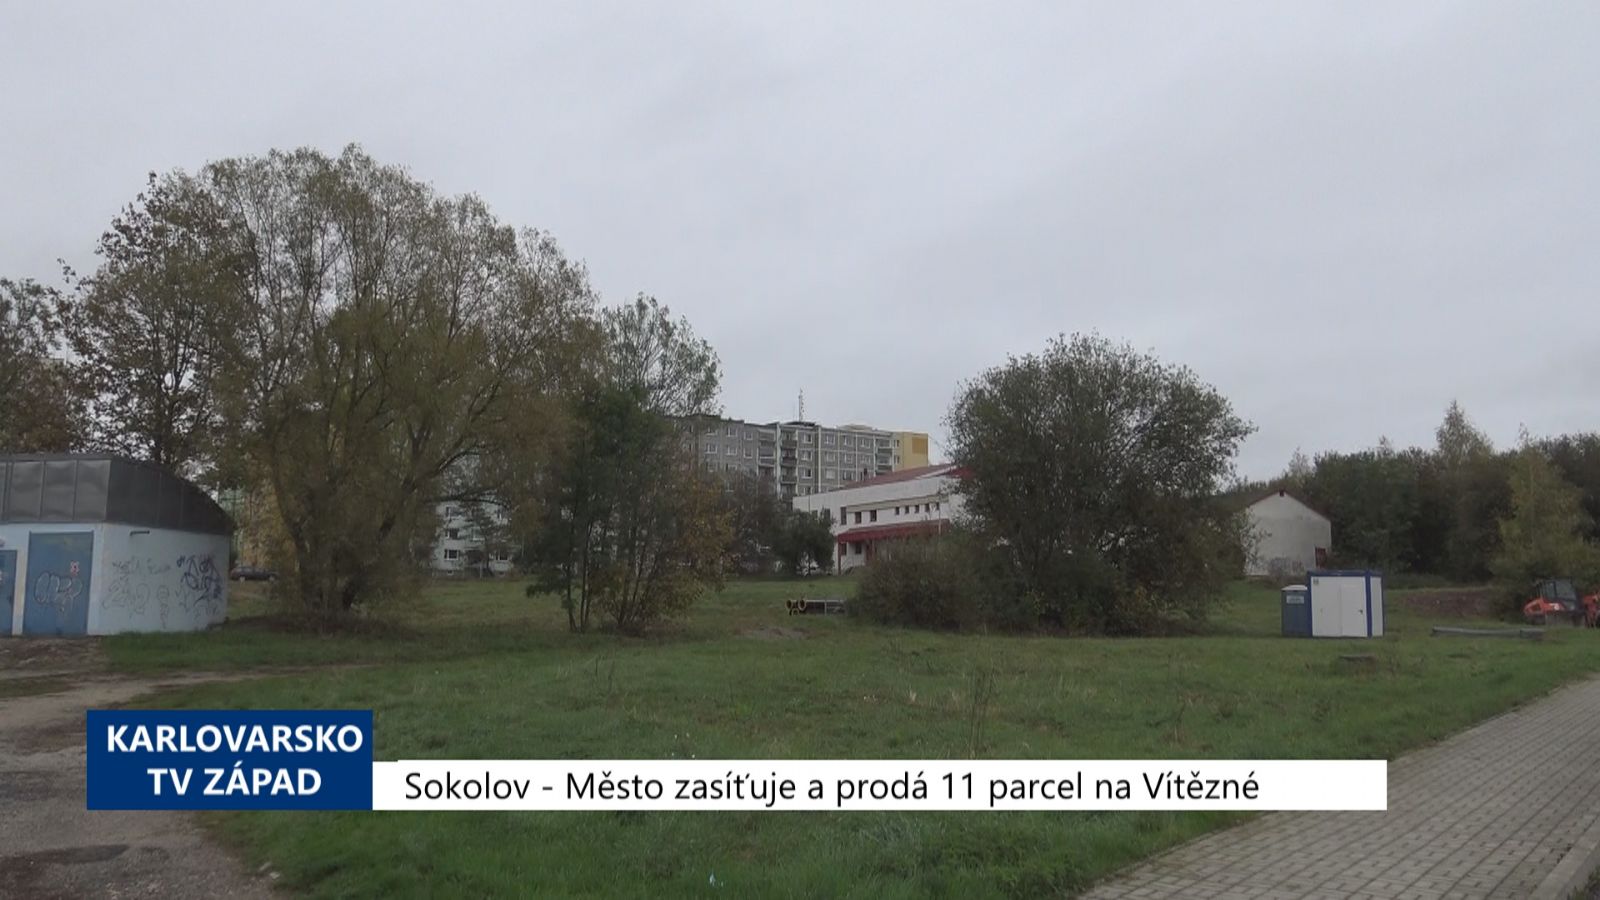 Sokolov: Město zasíťuje a prodá 11 parcel na Vítězné (TV Západ)